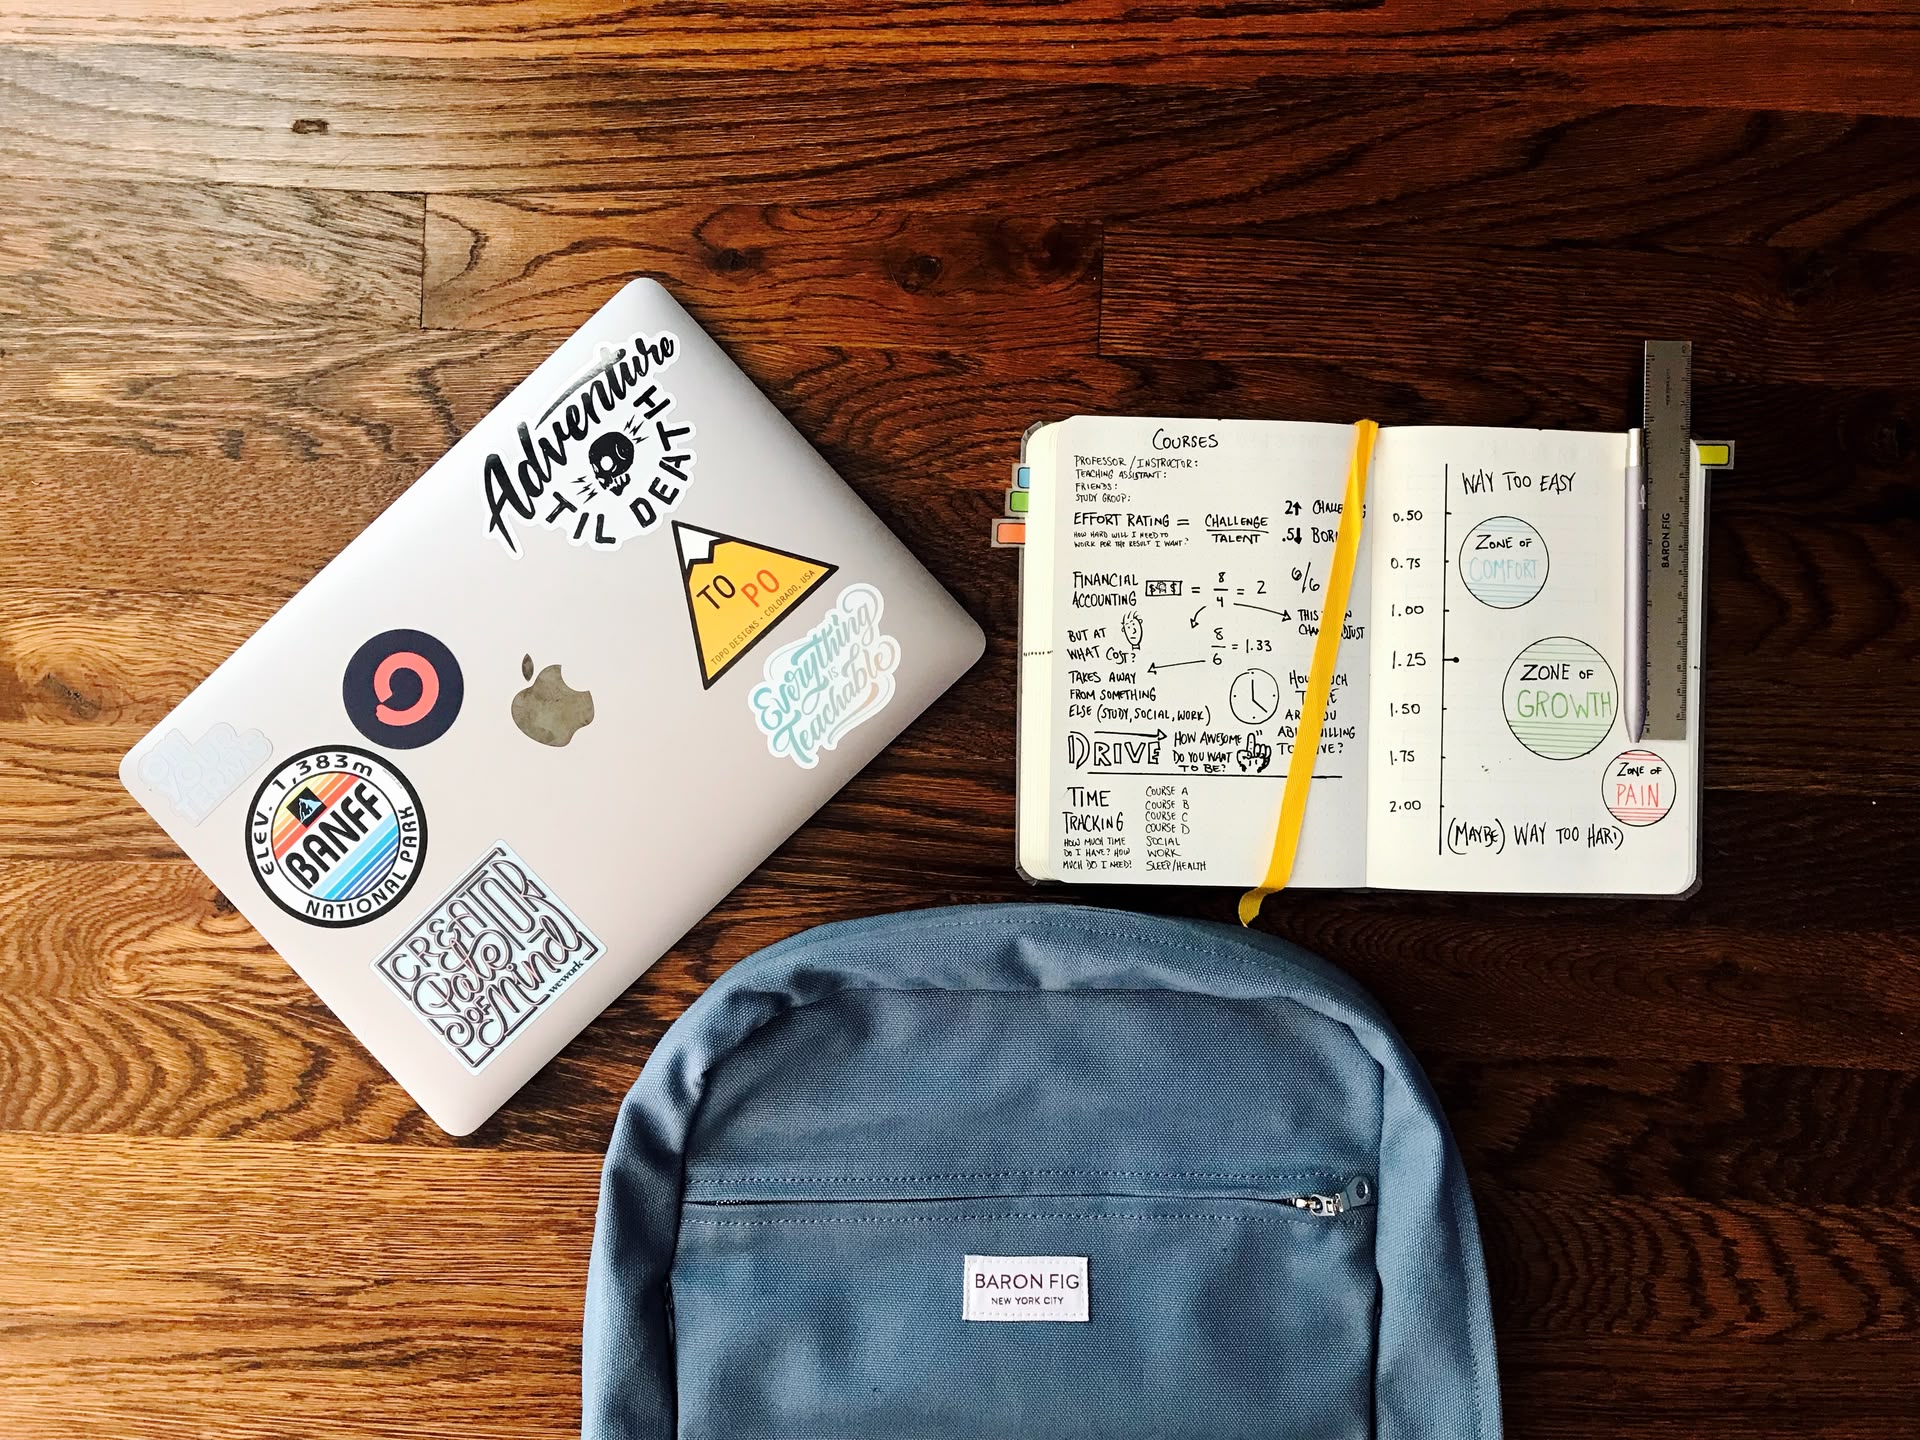 Ein Rucksack, ein MacBook mit Stickern und ein offenes Notizbuch liegen auf einem Tisch